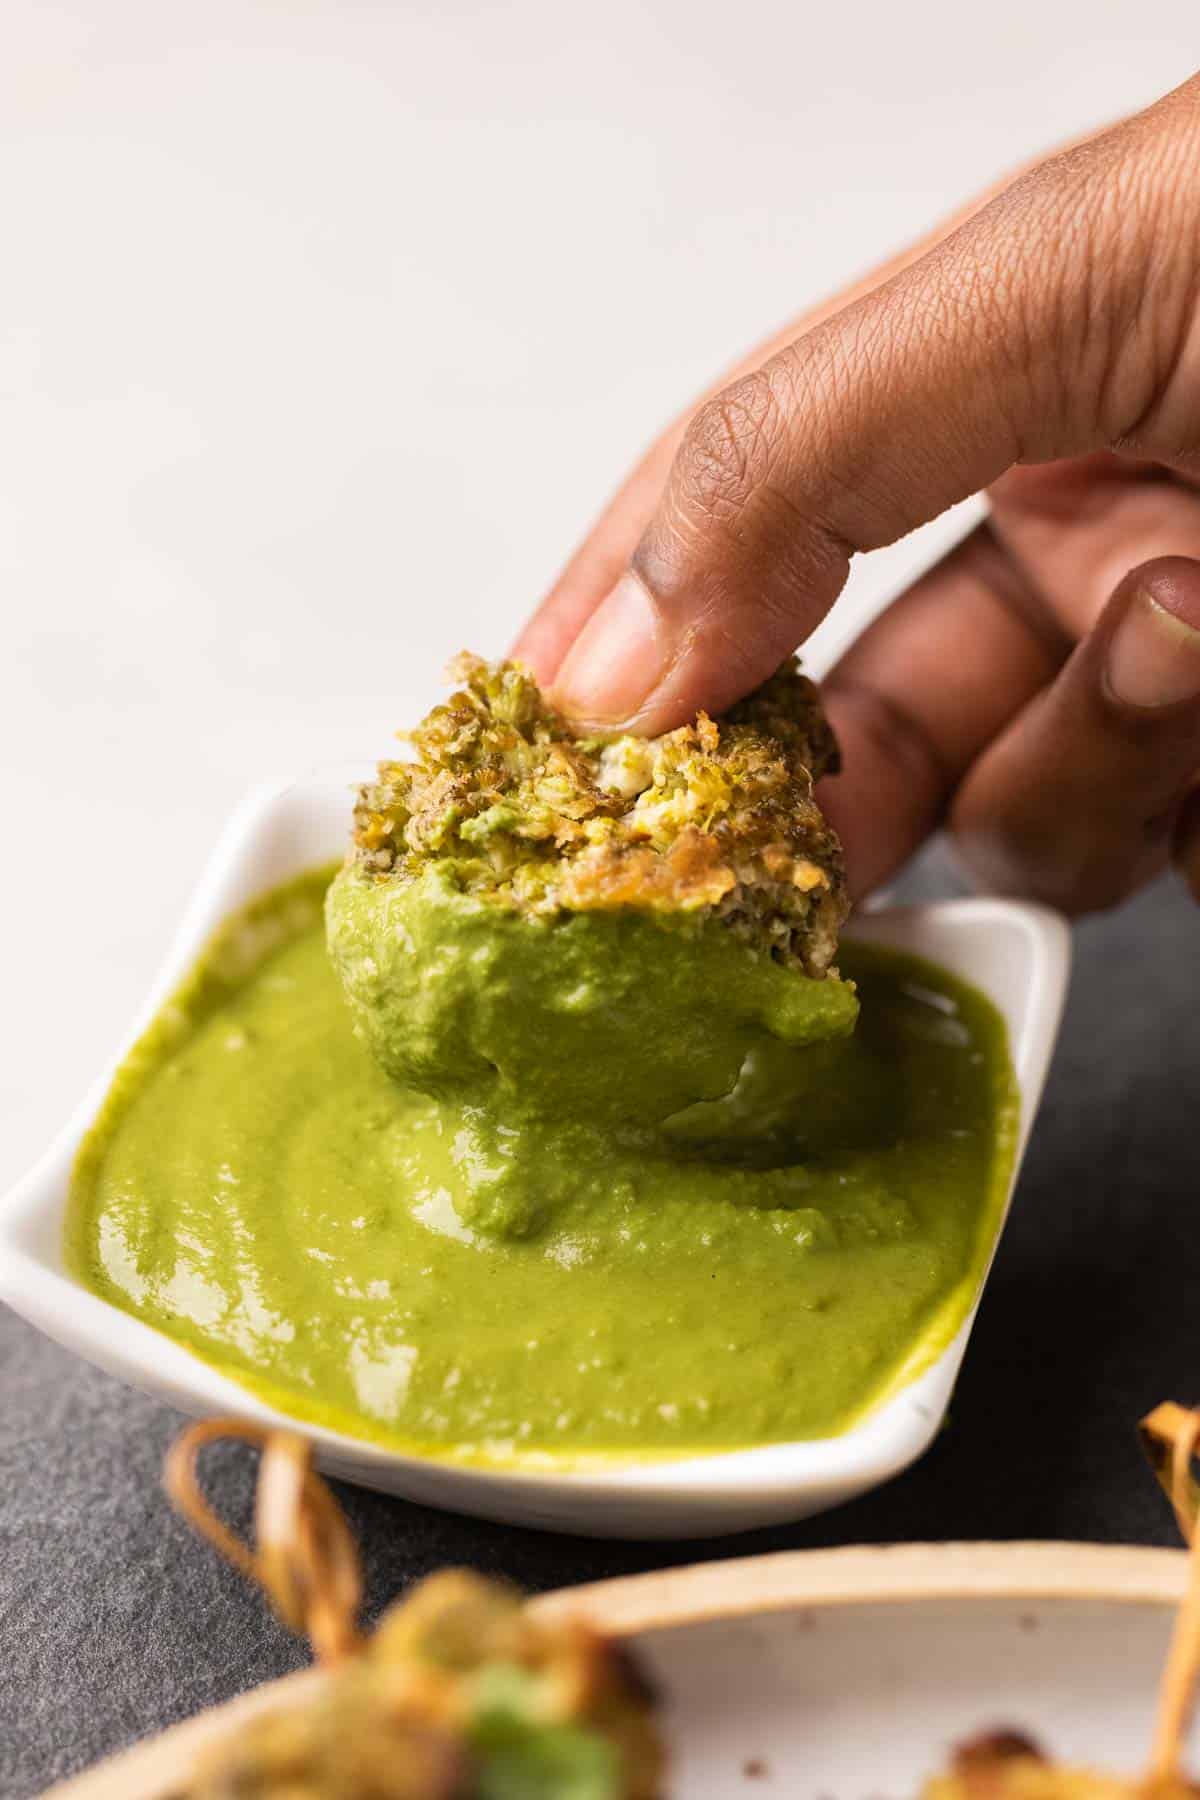 malai broccoli dipped in green chutney